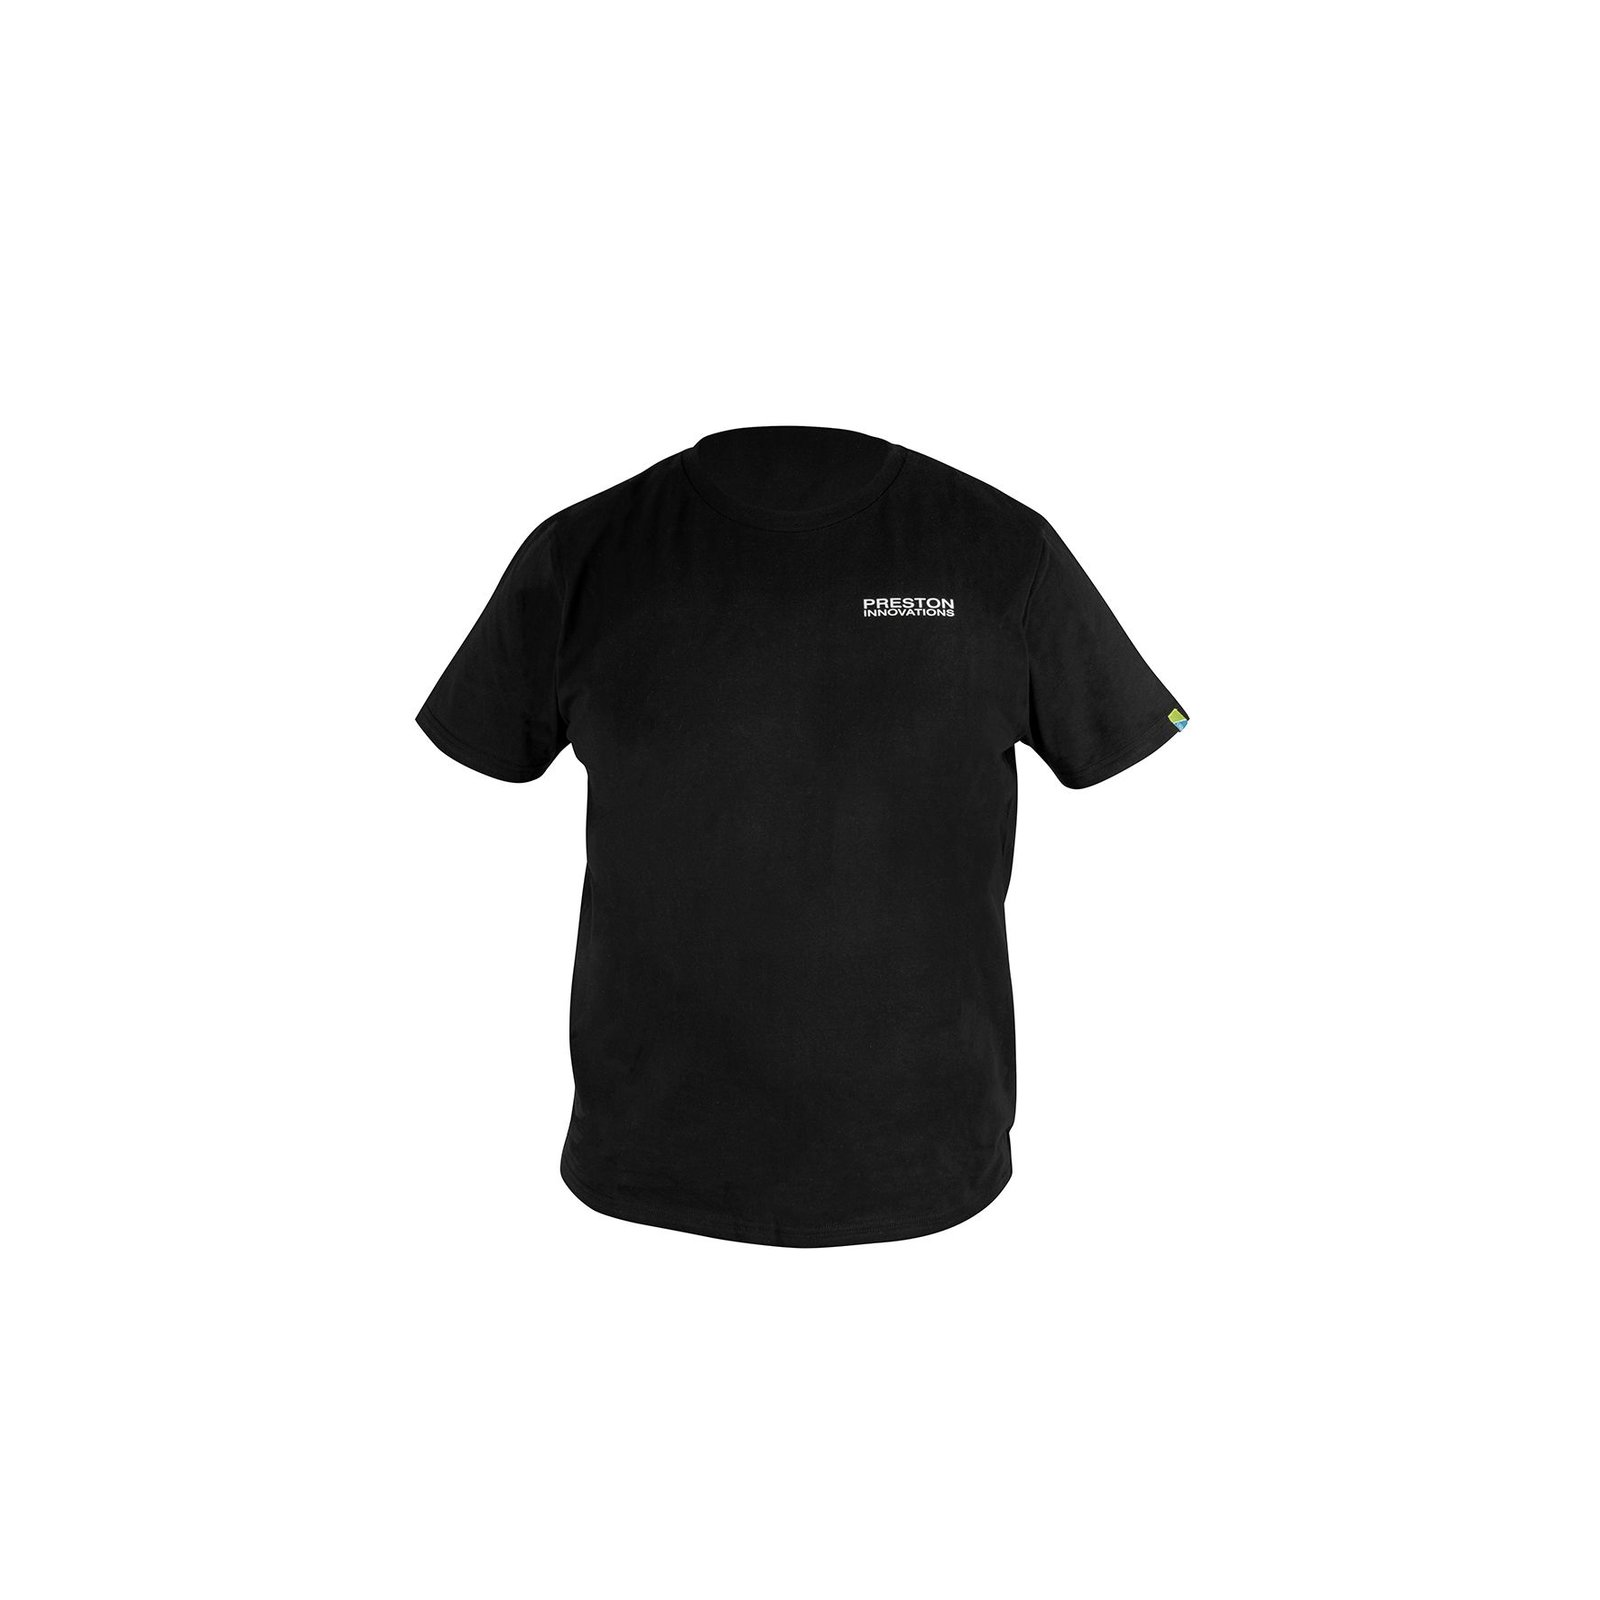 Preston Black T-Shirt - Medium